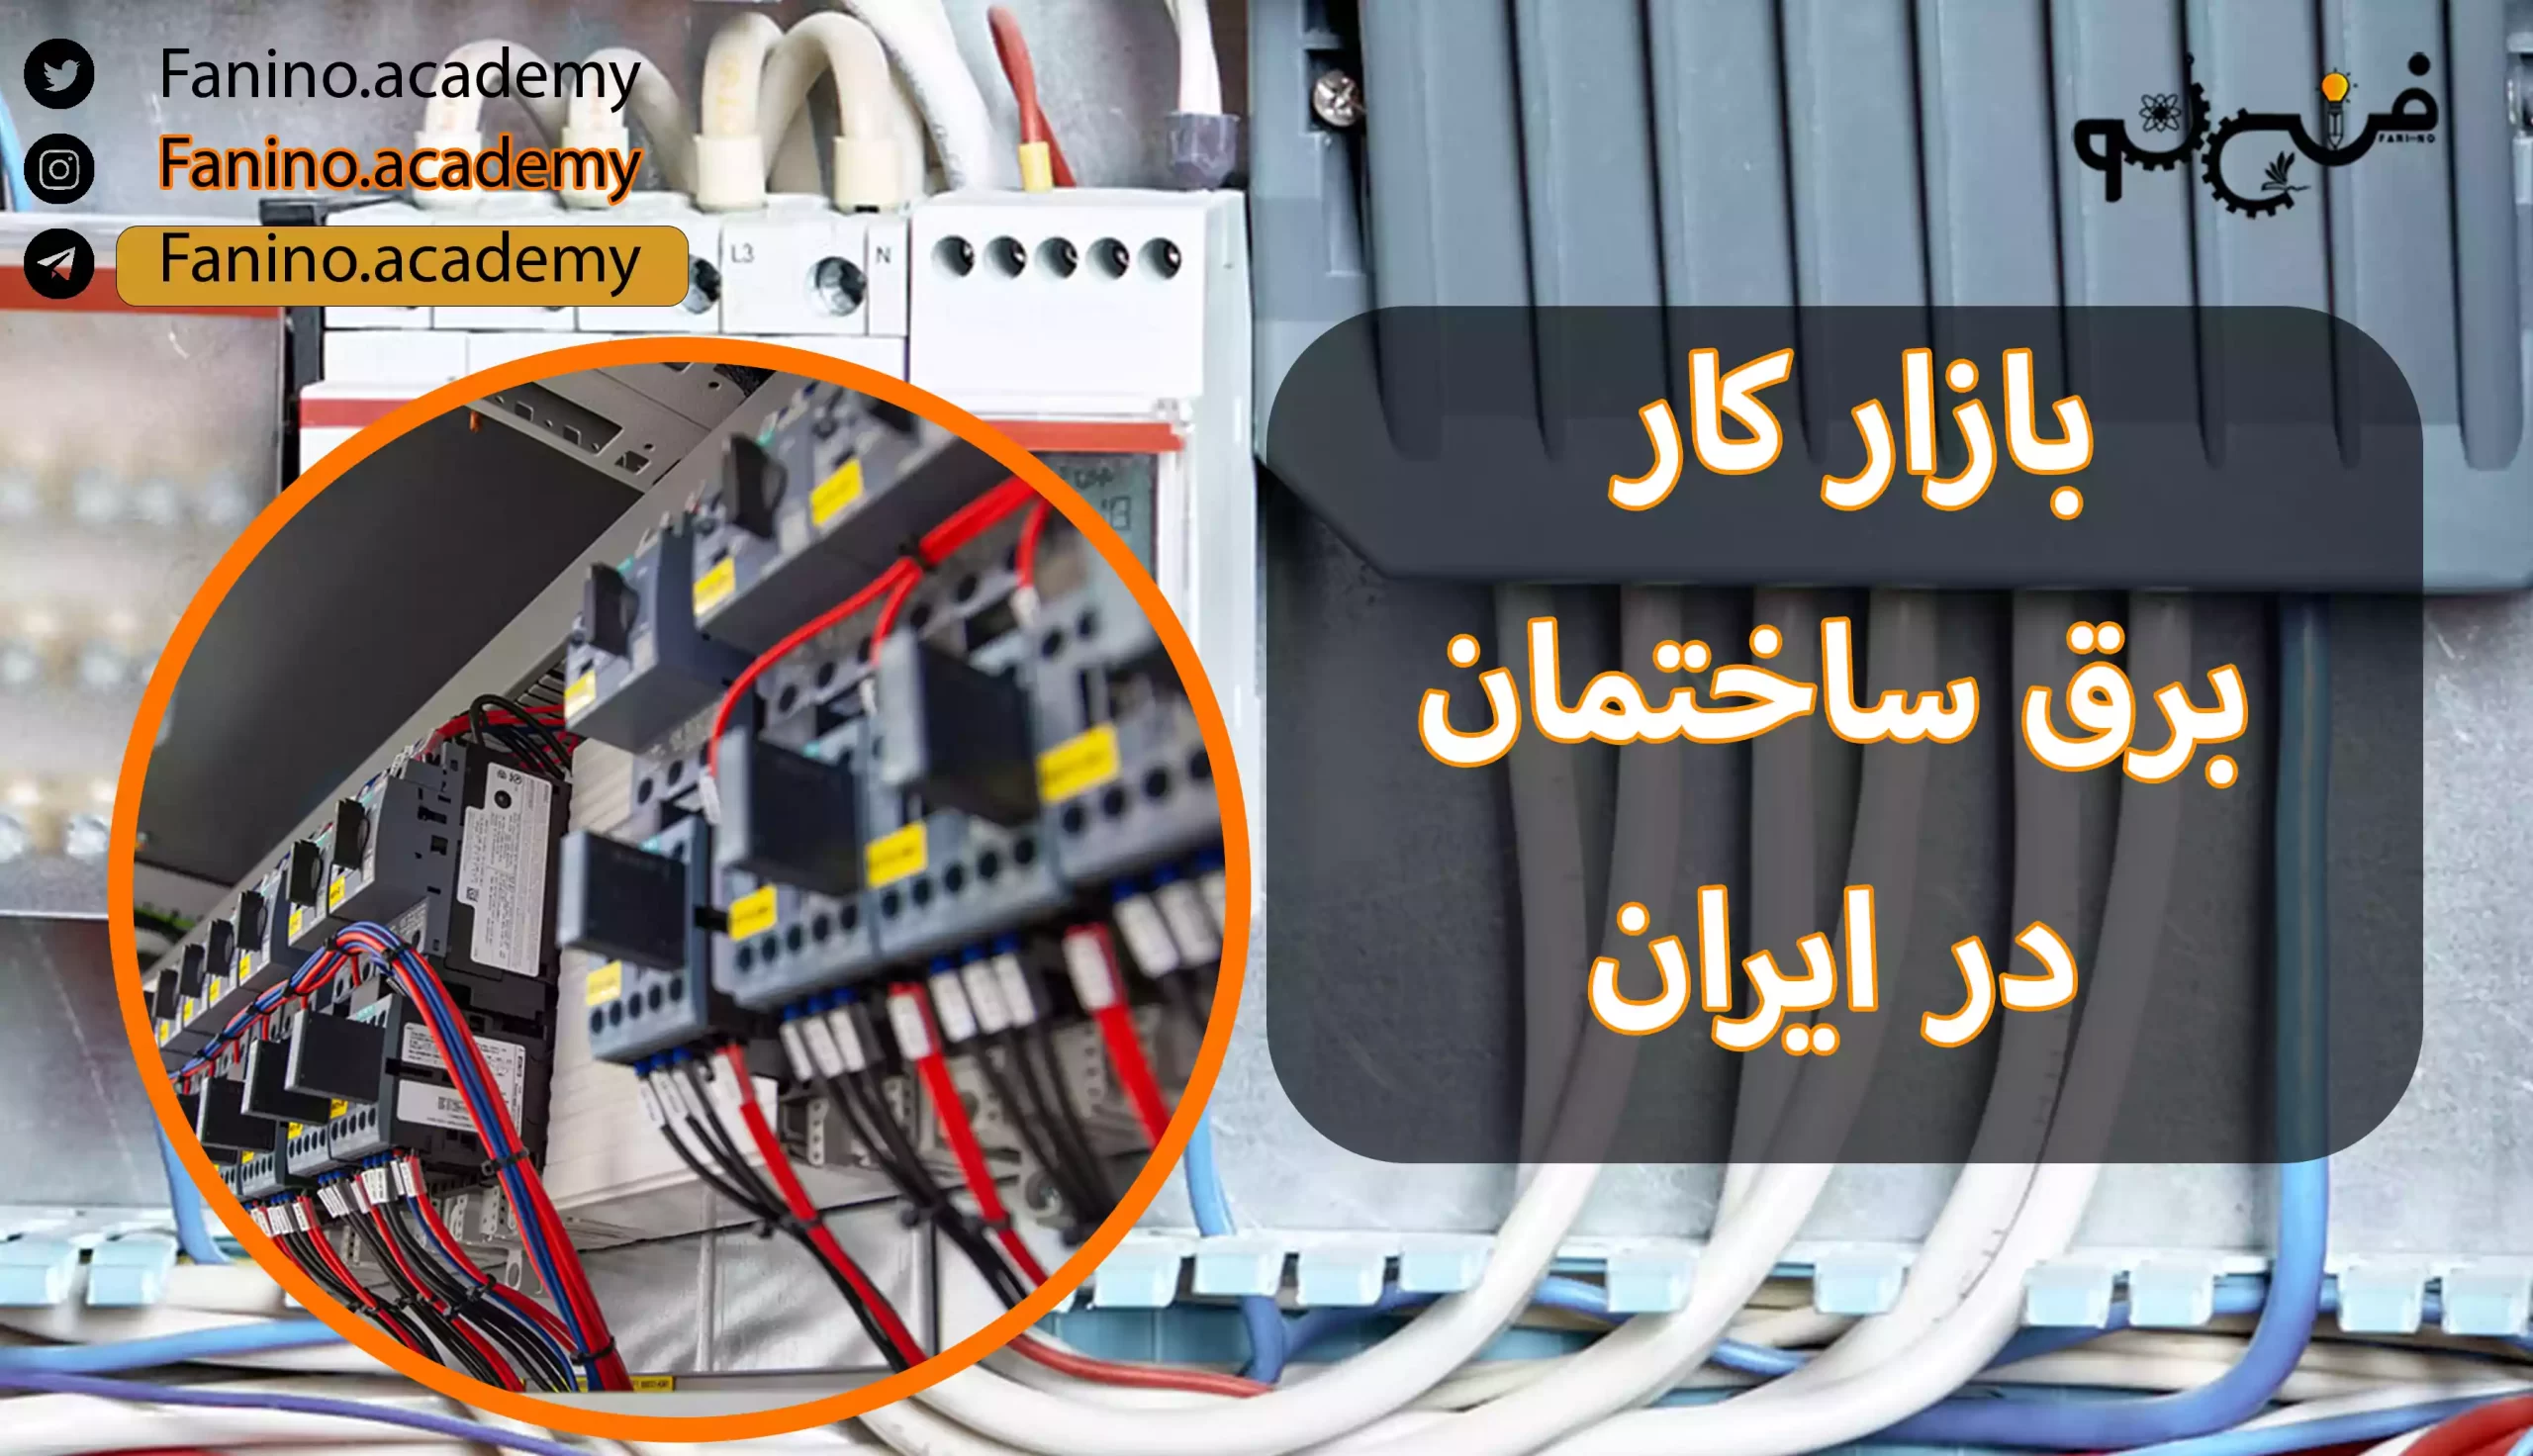 بازار کار برق ساختمان در ایران